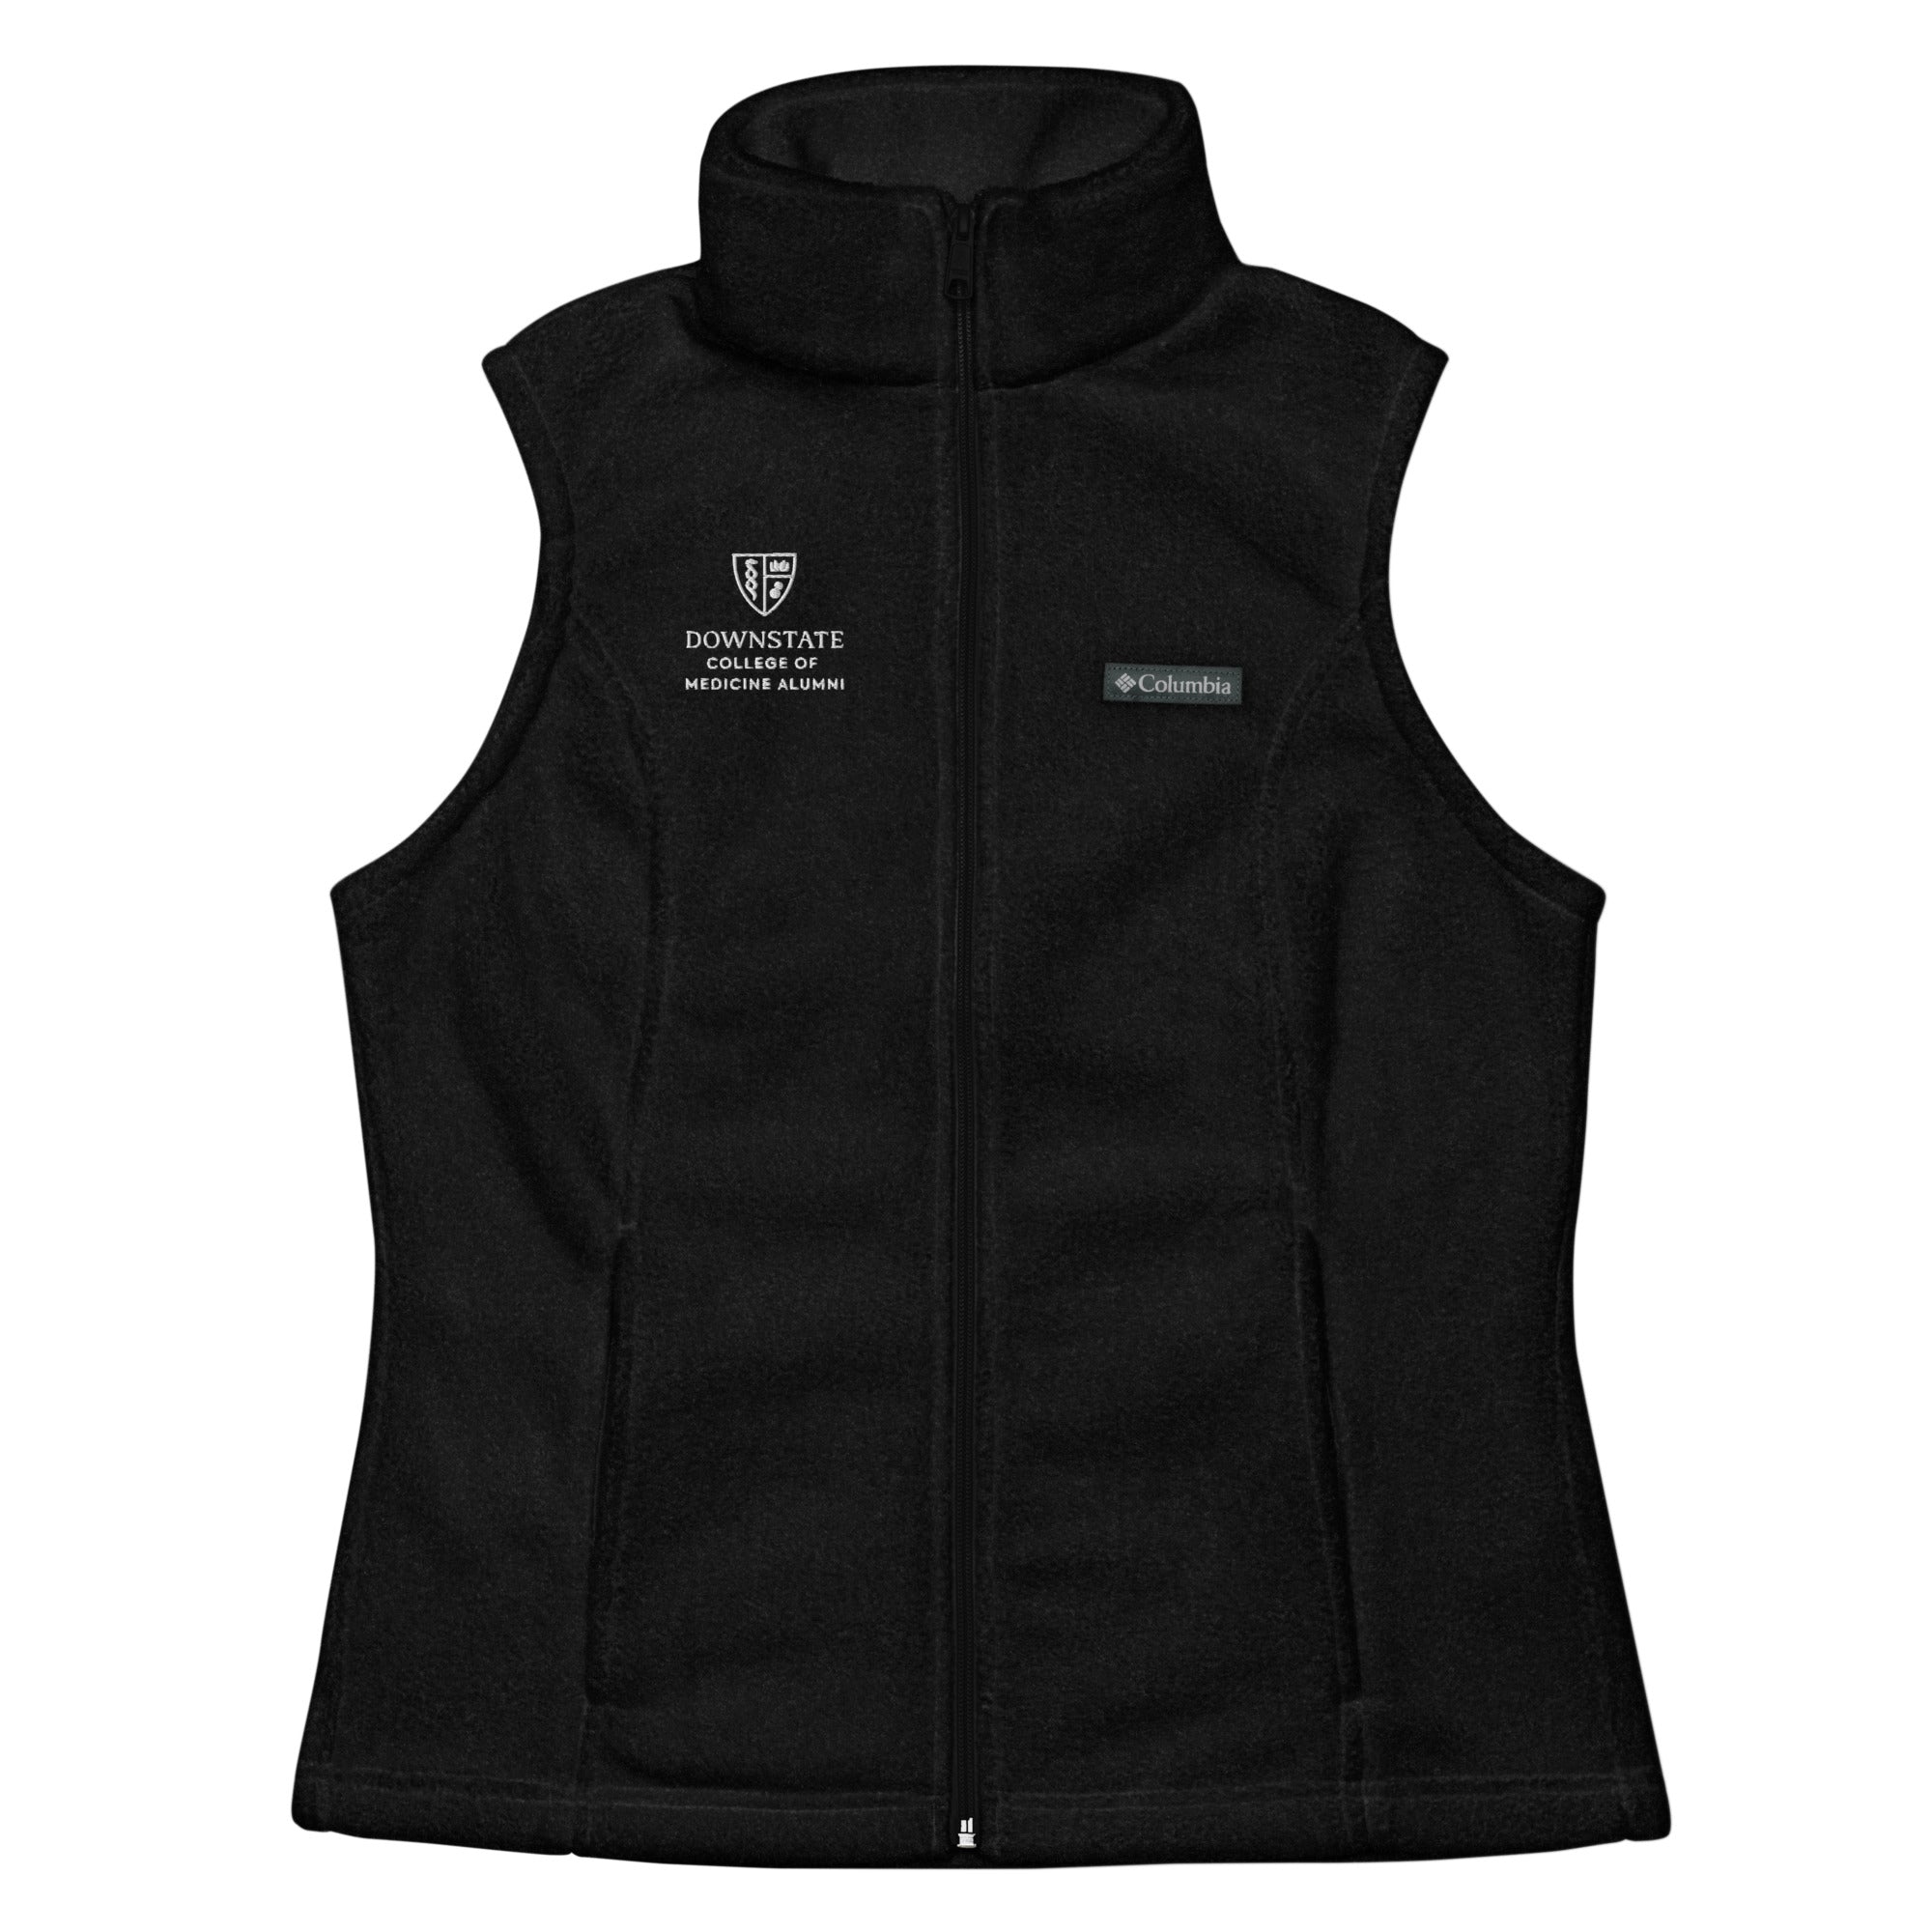 AACMSD Women’s Columbia fleece vest